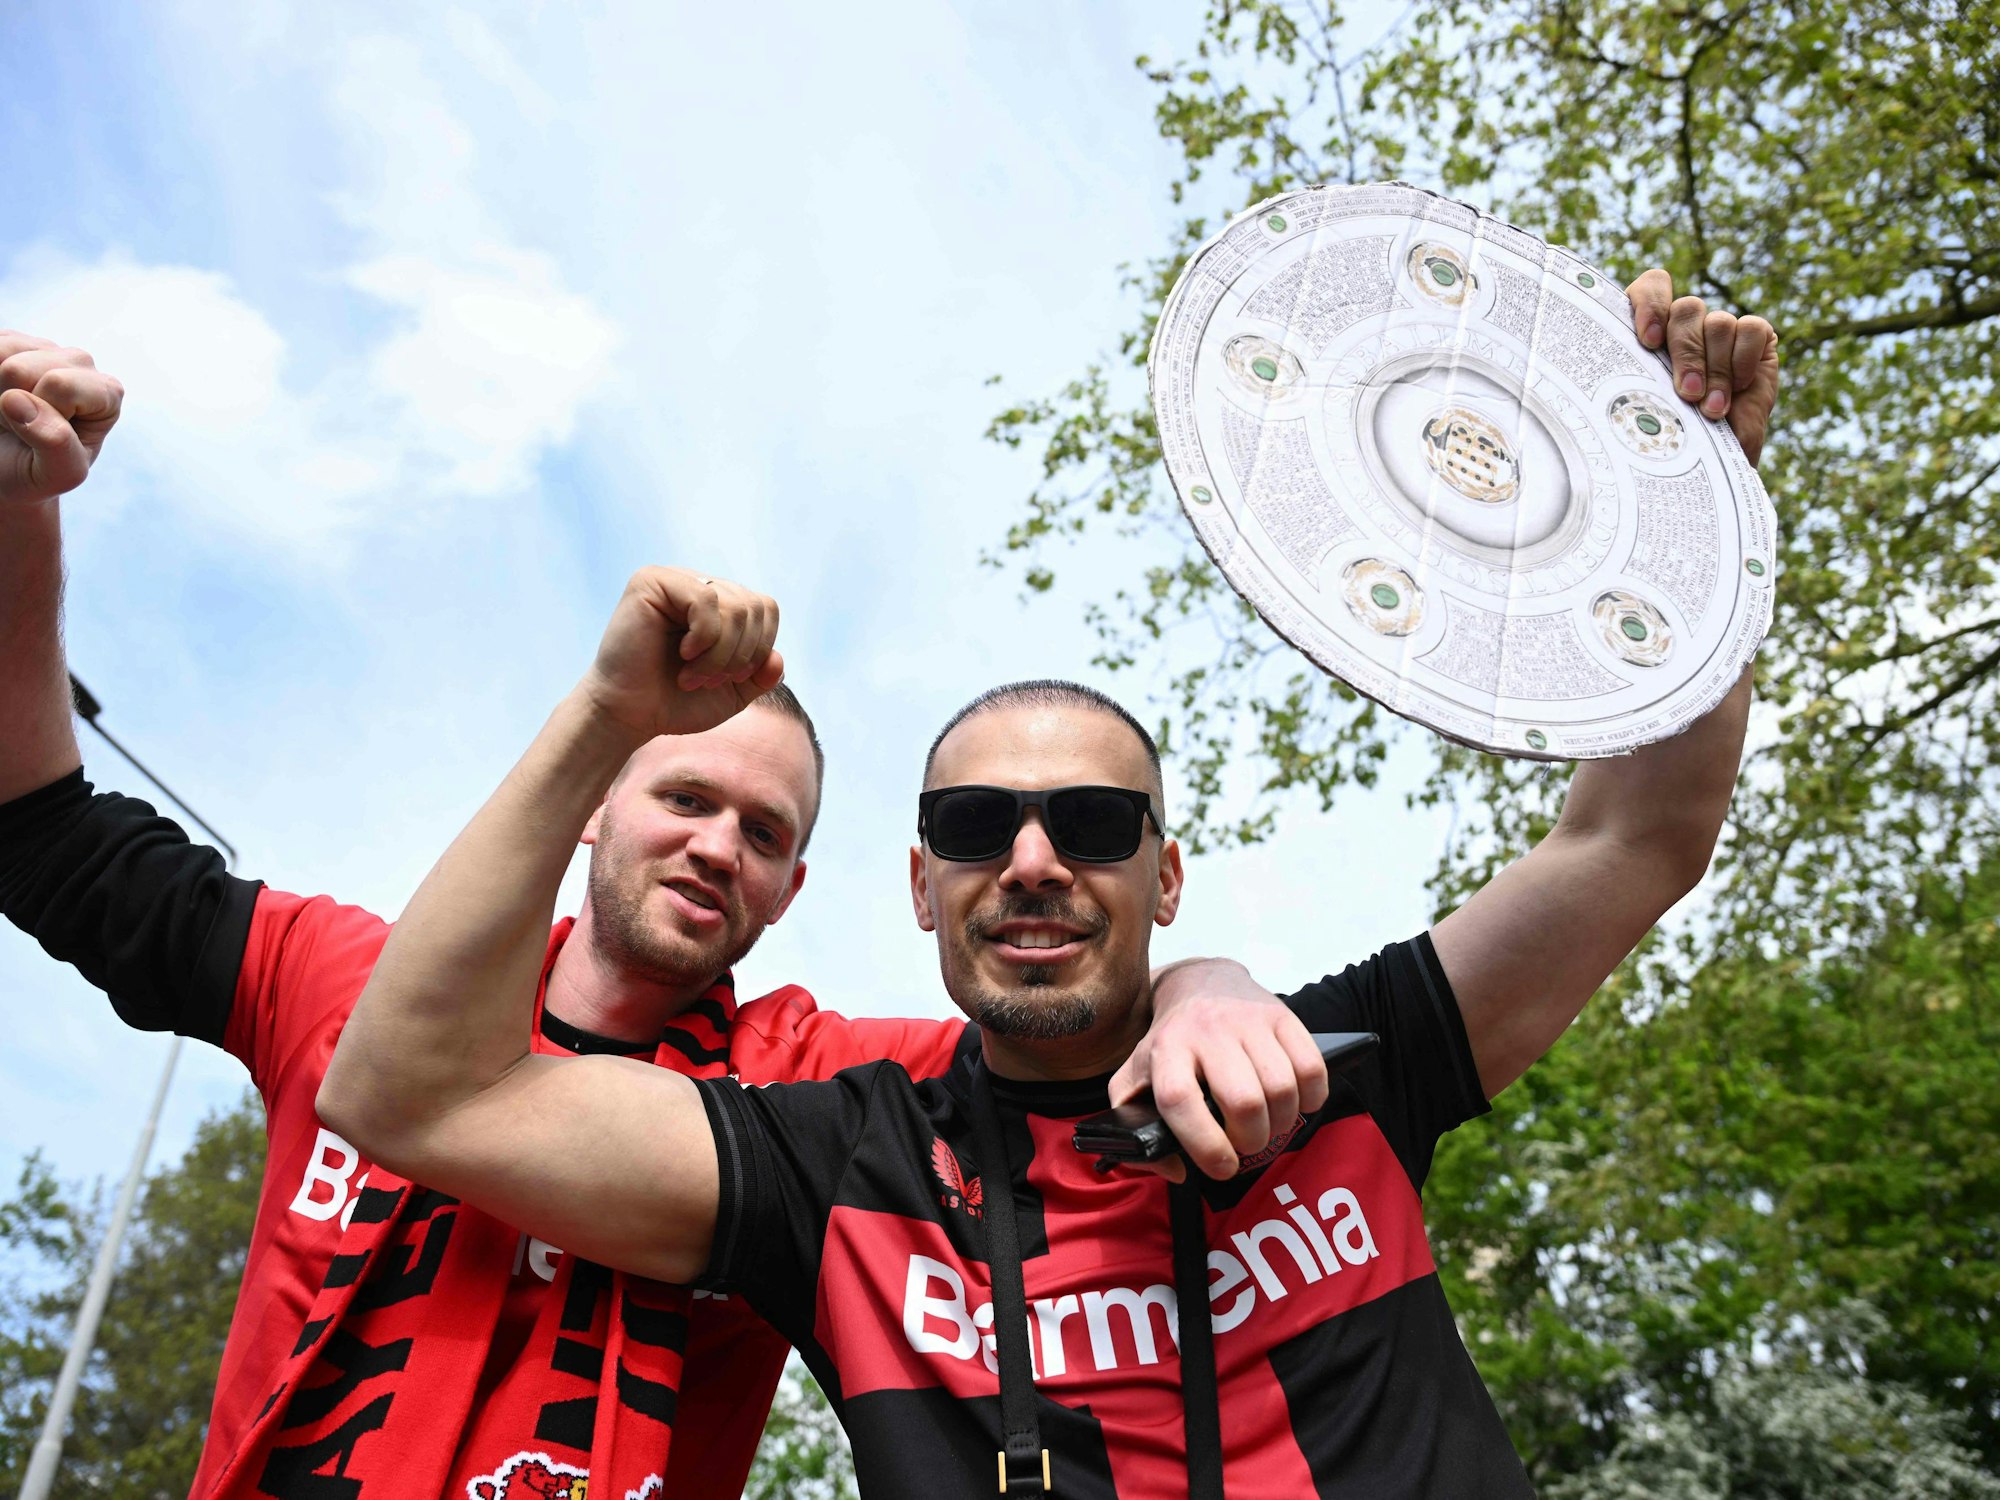 Zwei Leverkusen-Fans halten eine Meisterschale aus Pappe hoch.